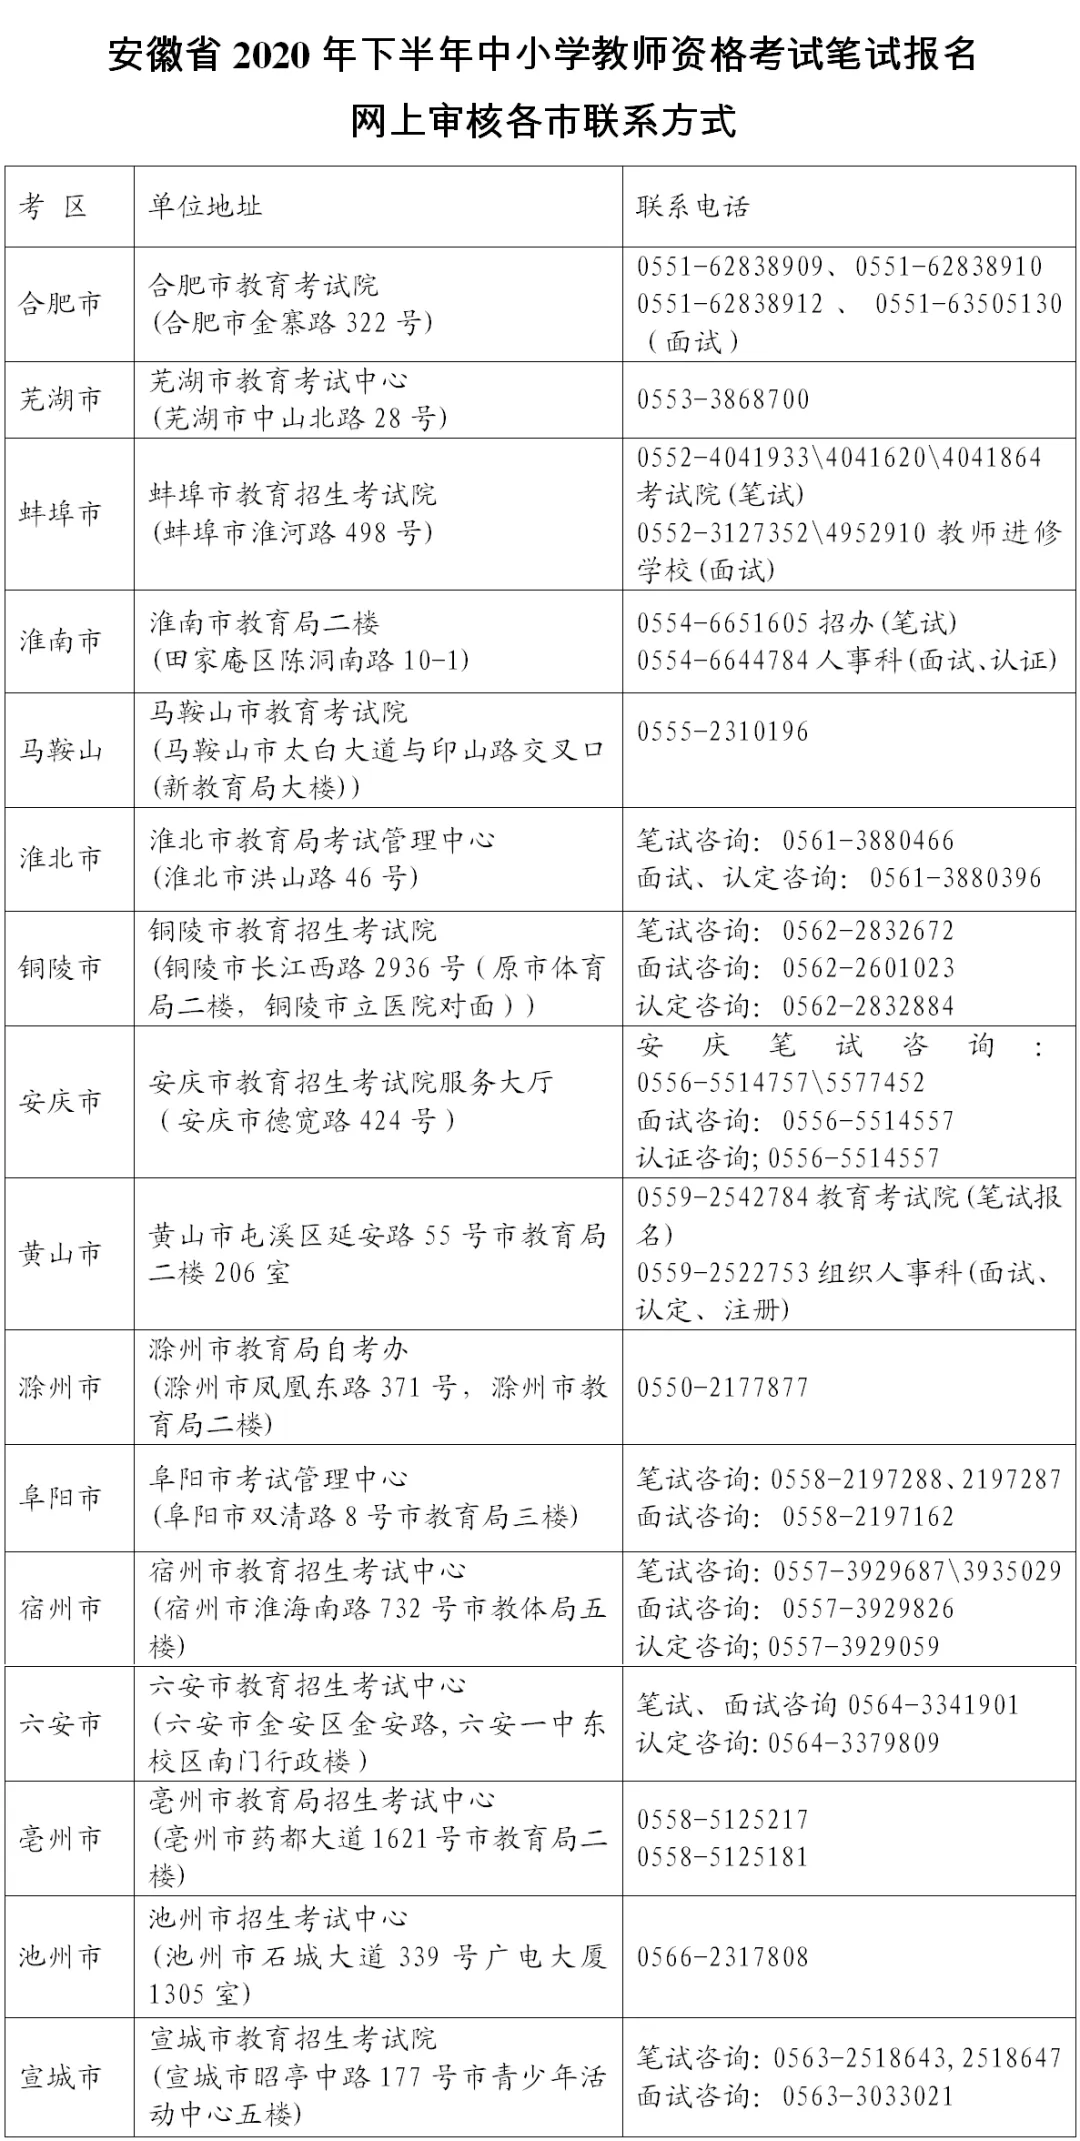 安徽省2020年下半年中小学教师资格考试笔试公告(图2)